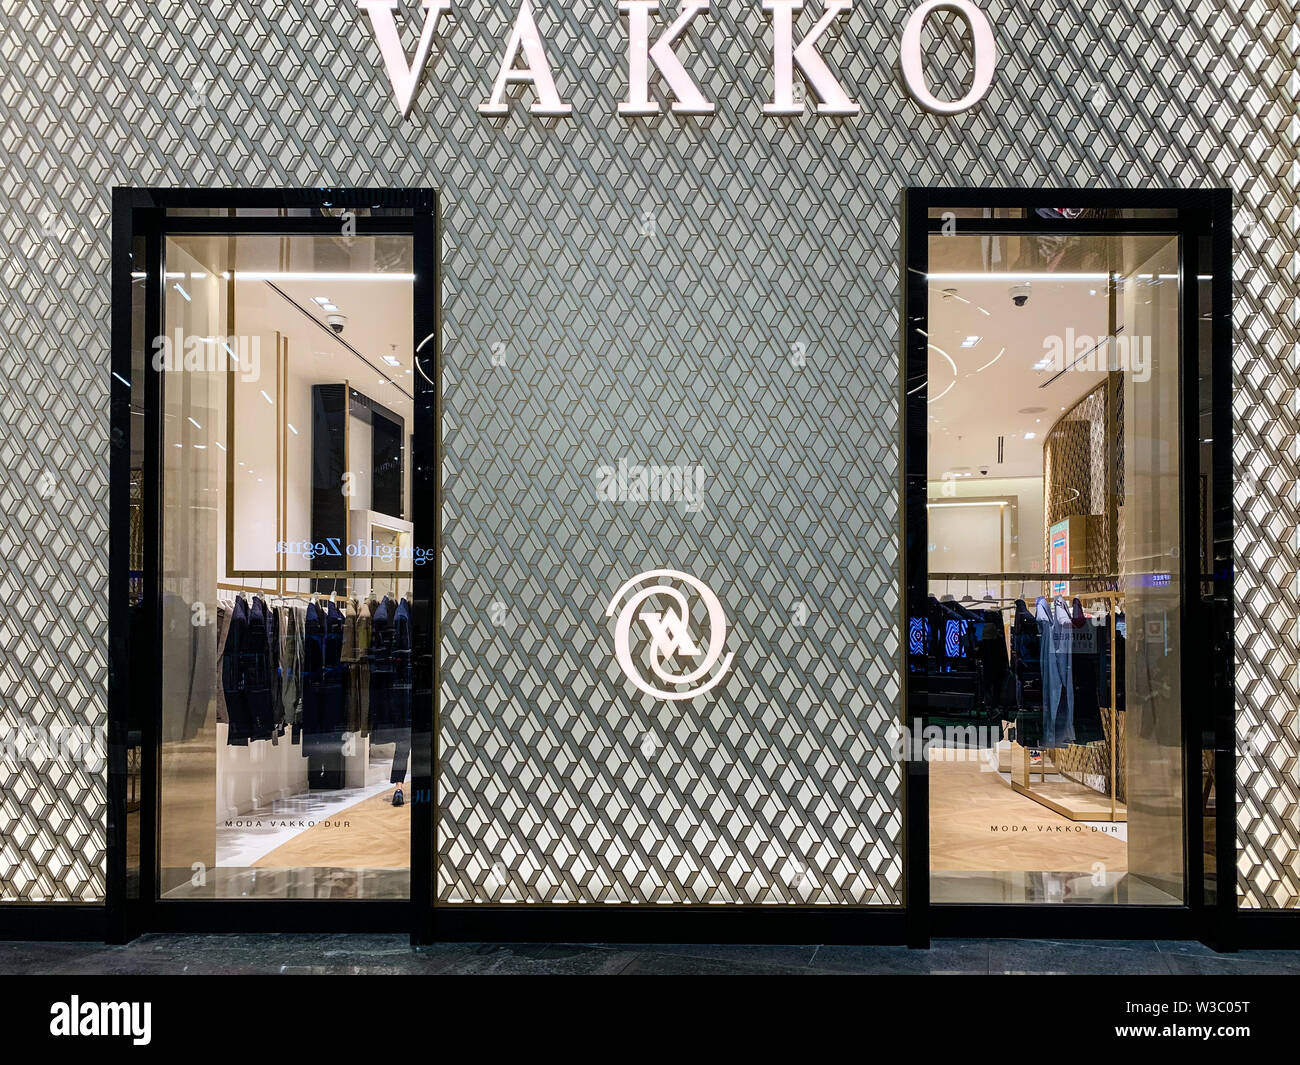 Boutique Vakko, avant la vente de marchandises de haute Vakko est une entreprise de mode turque. Elle produit et vend du textile, de la maroquinerie et des accessoires. Istanbul/TUR Banque D'Images